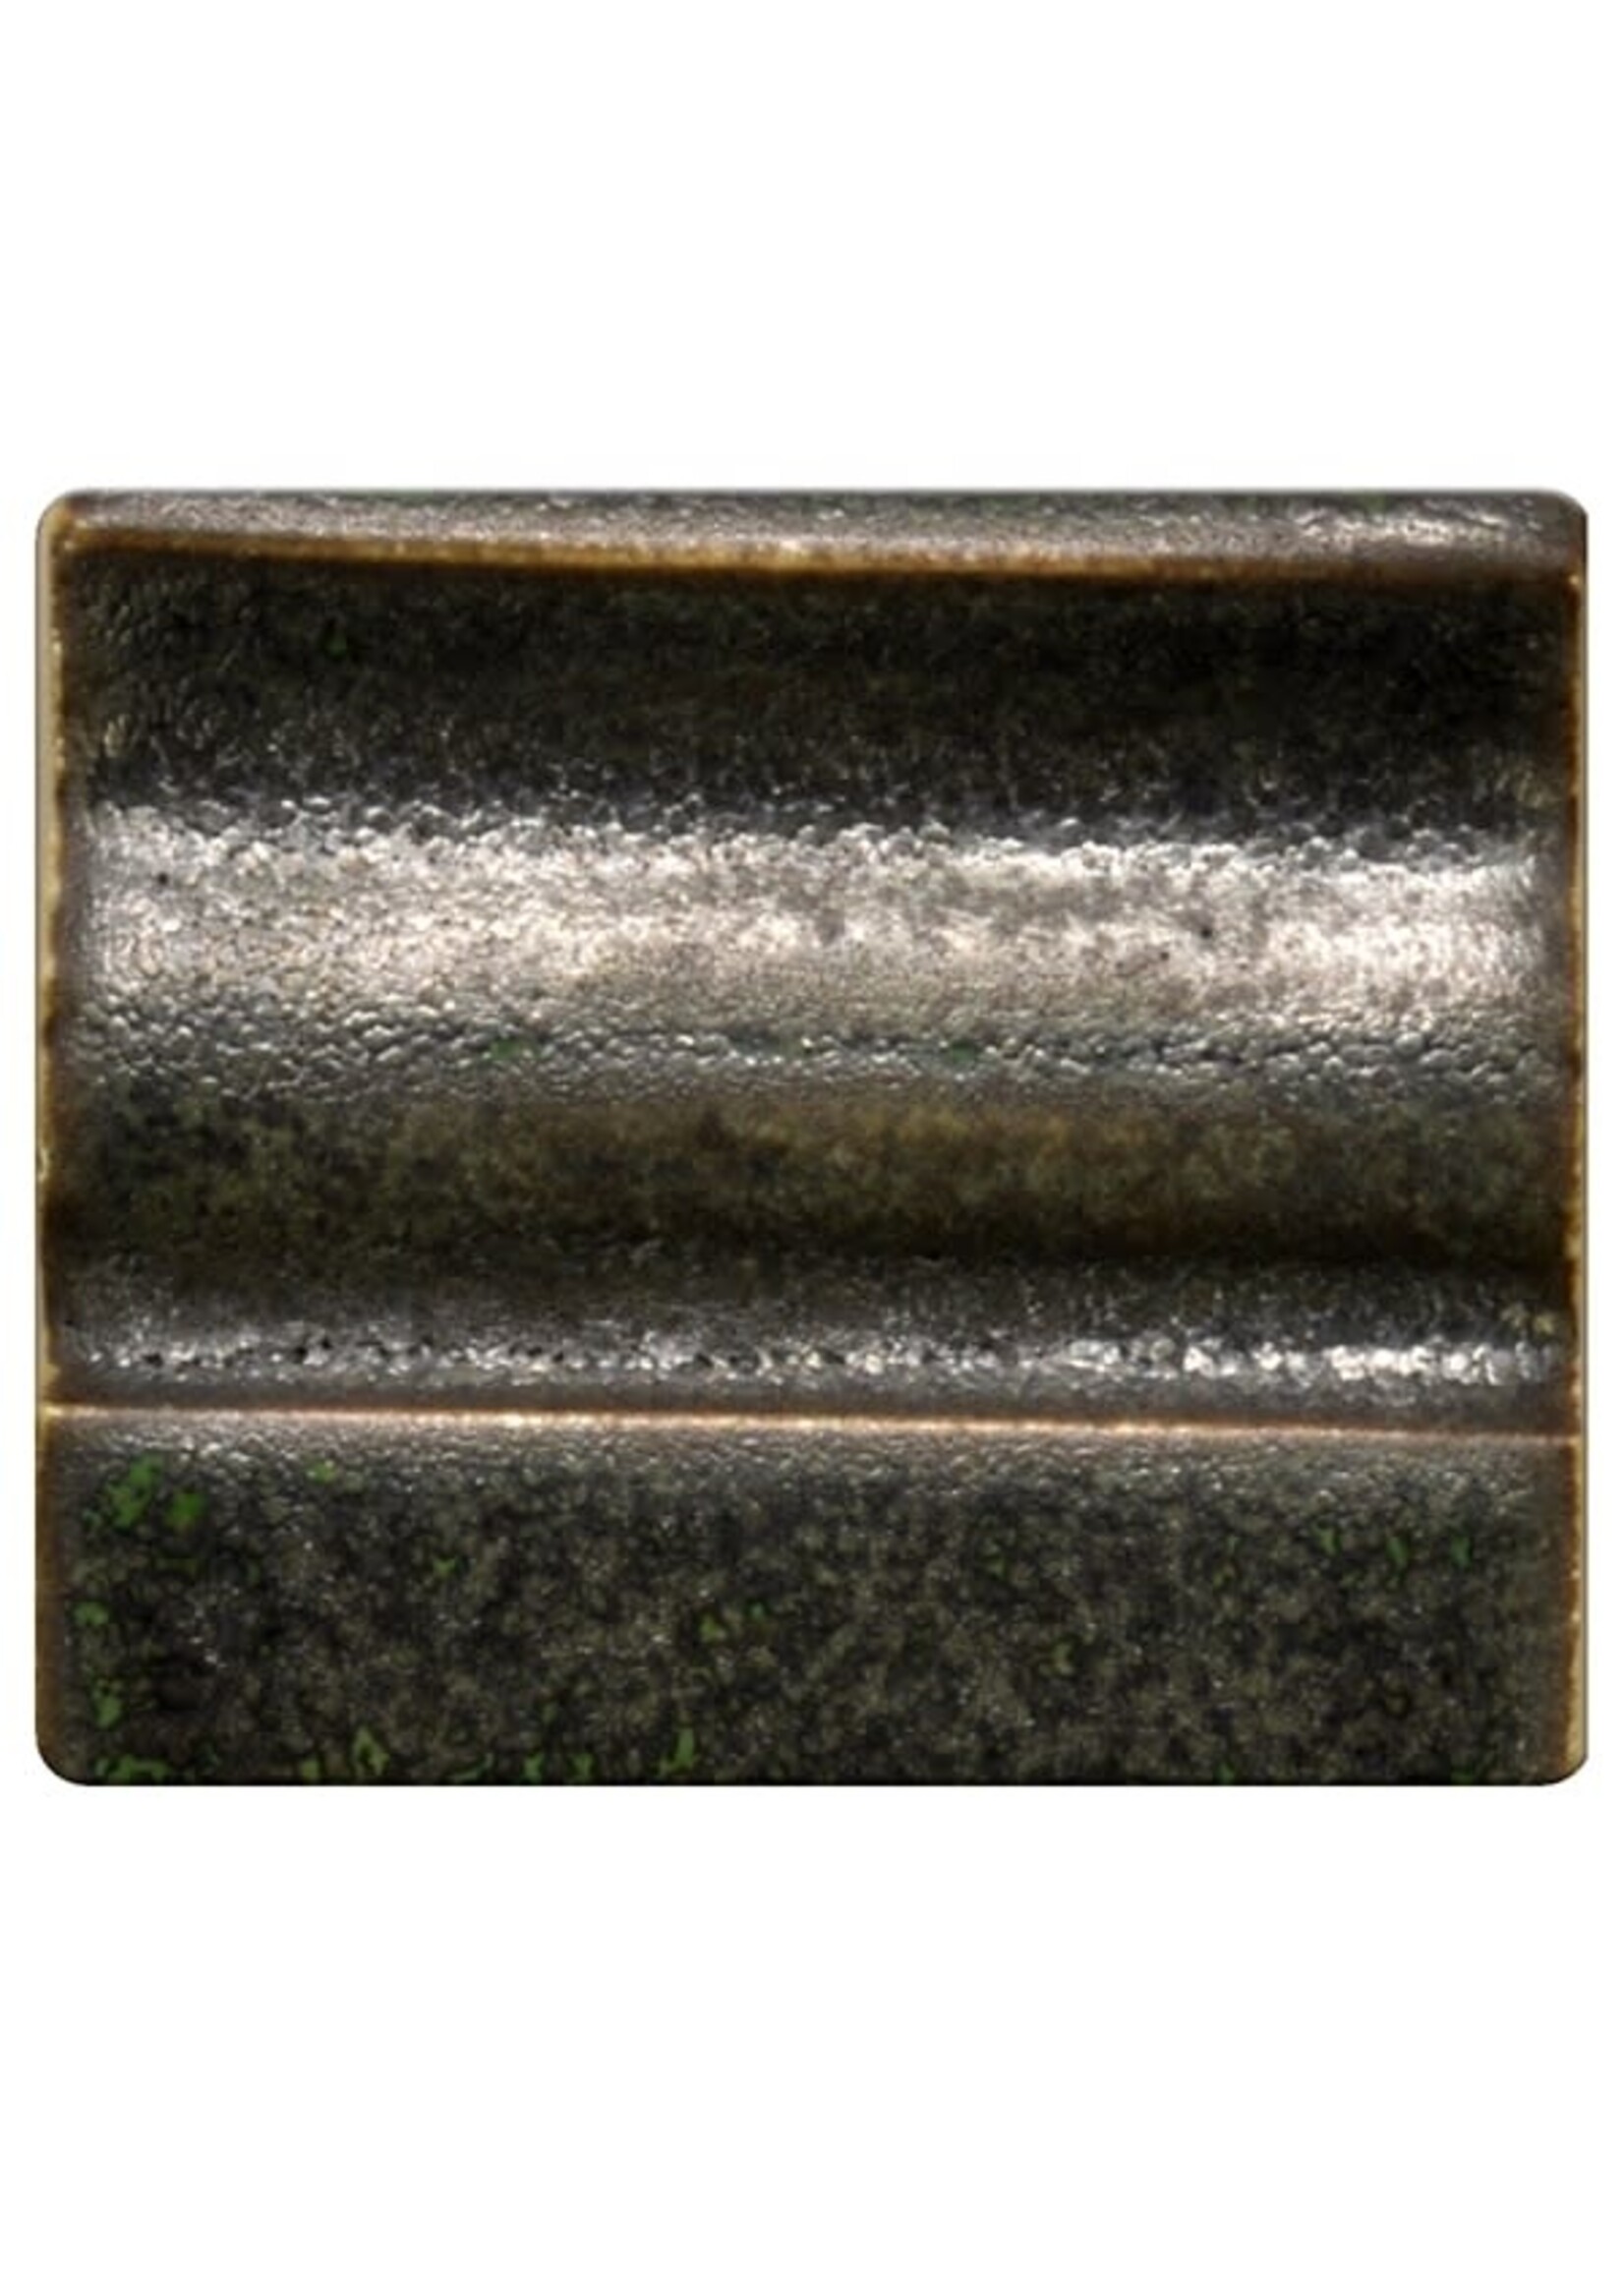 Spectrum 1537 - Antique Copper - Pint